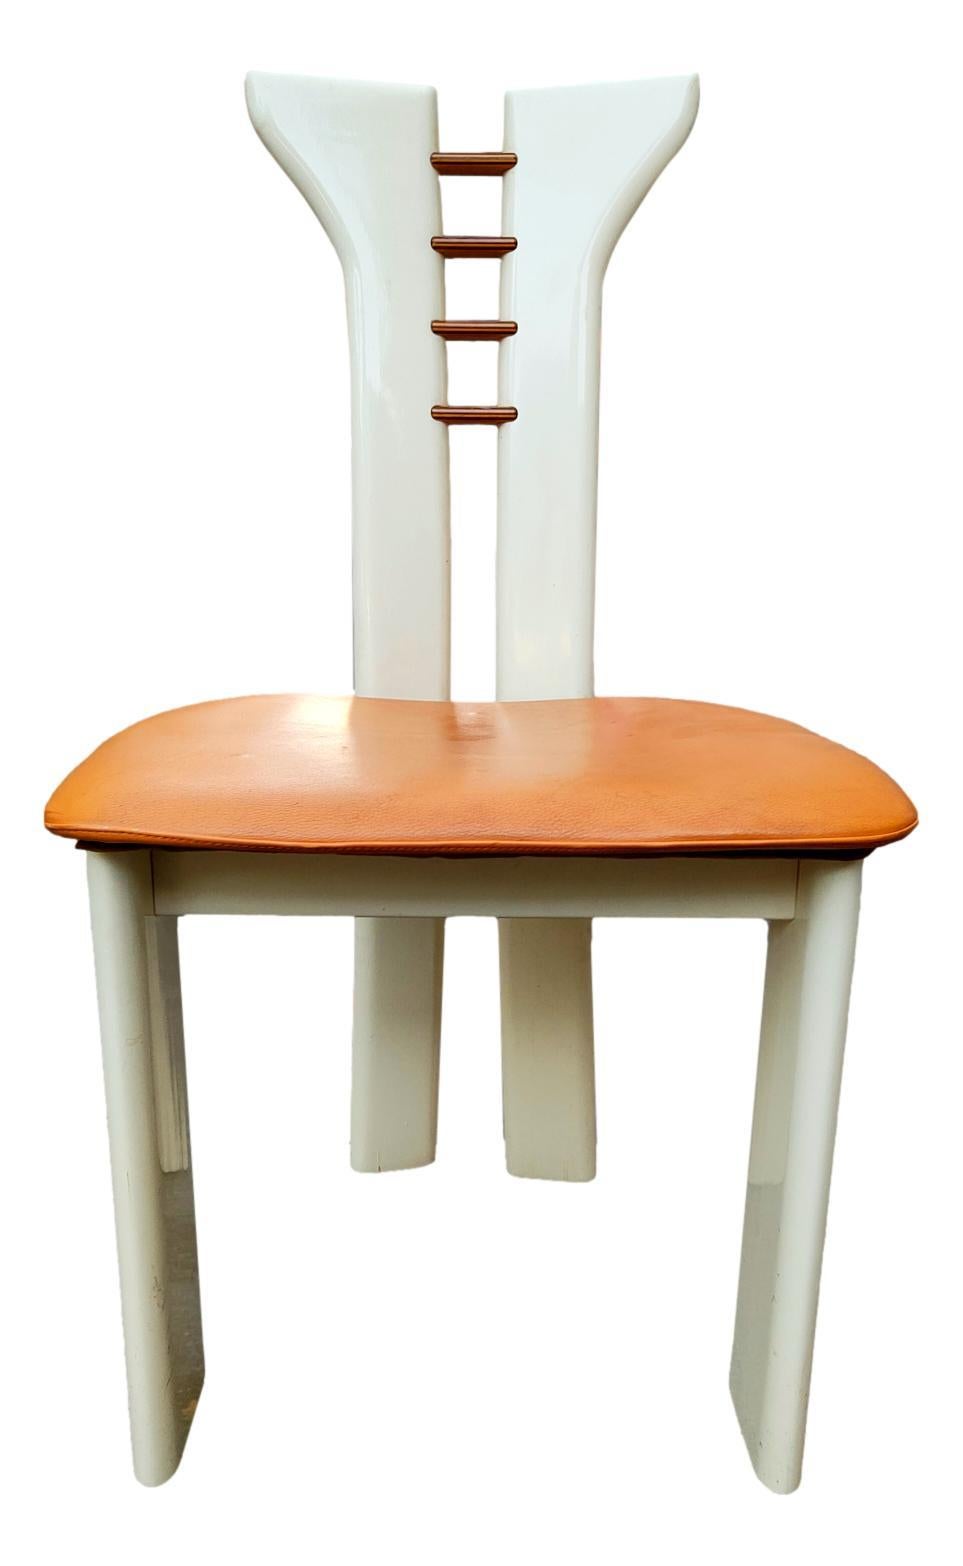 Posten von vier original 70er Jahre Stühlen, Design pierre cardin für Roche Bobois
aus Holz mit den klassischen Cardin-Verzierungen auf der Rückenlehne, Originalsitz aus Leder, Farbe weiß/milch
Sie messen 89 cm in der Höhe, 48 cm in der Tiefe, 45